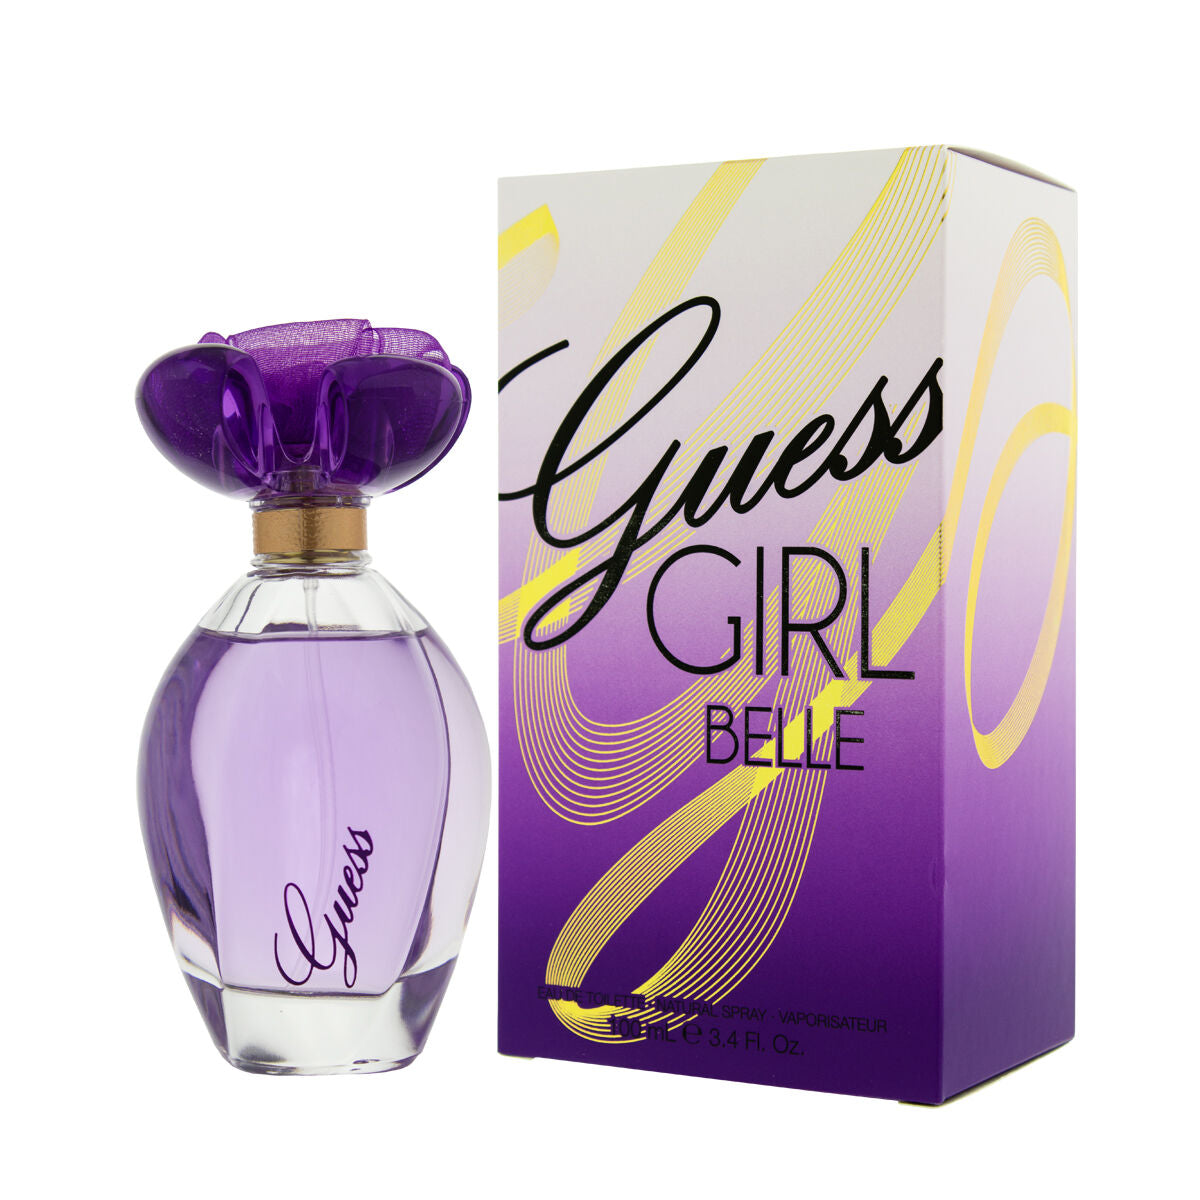 Women's Perfume Guess EDT Girl Belle (100 ml)-0